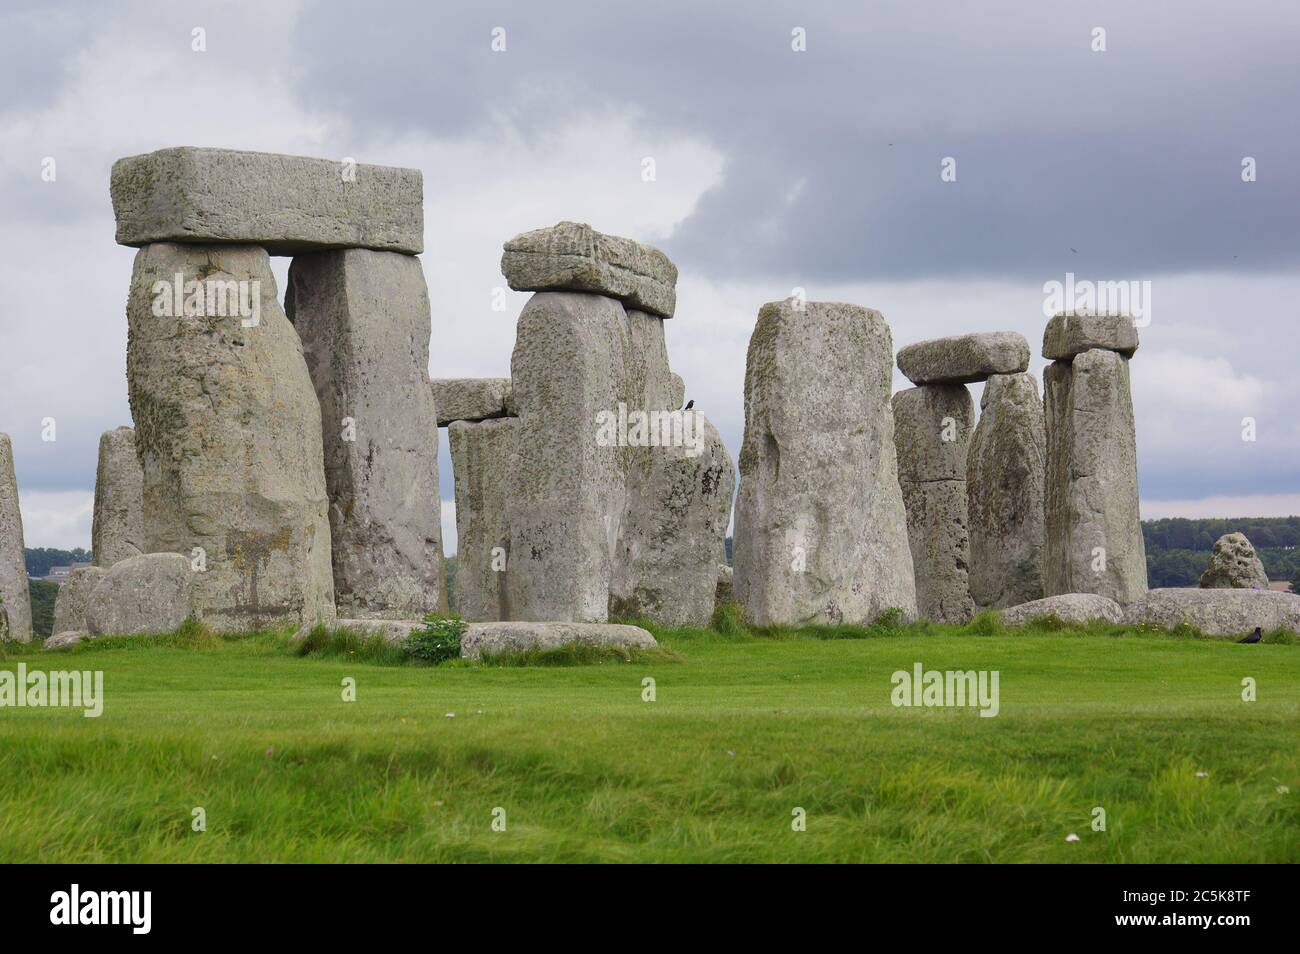 Stonehenge cercle de pierres debout. Angleterre, Royaume-Uni Banque D'Images